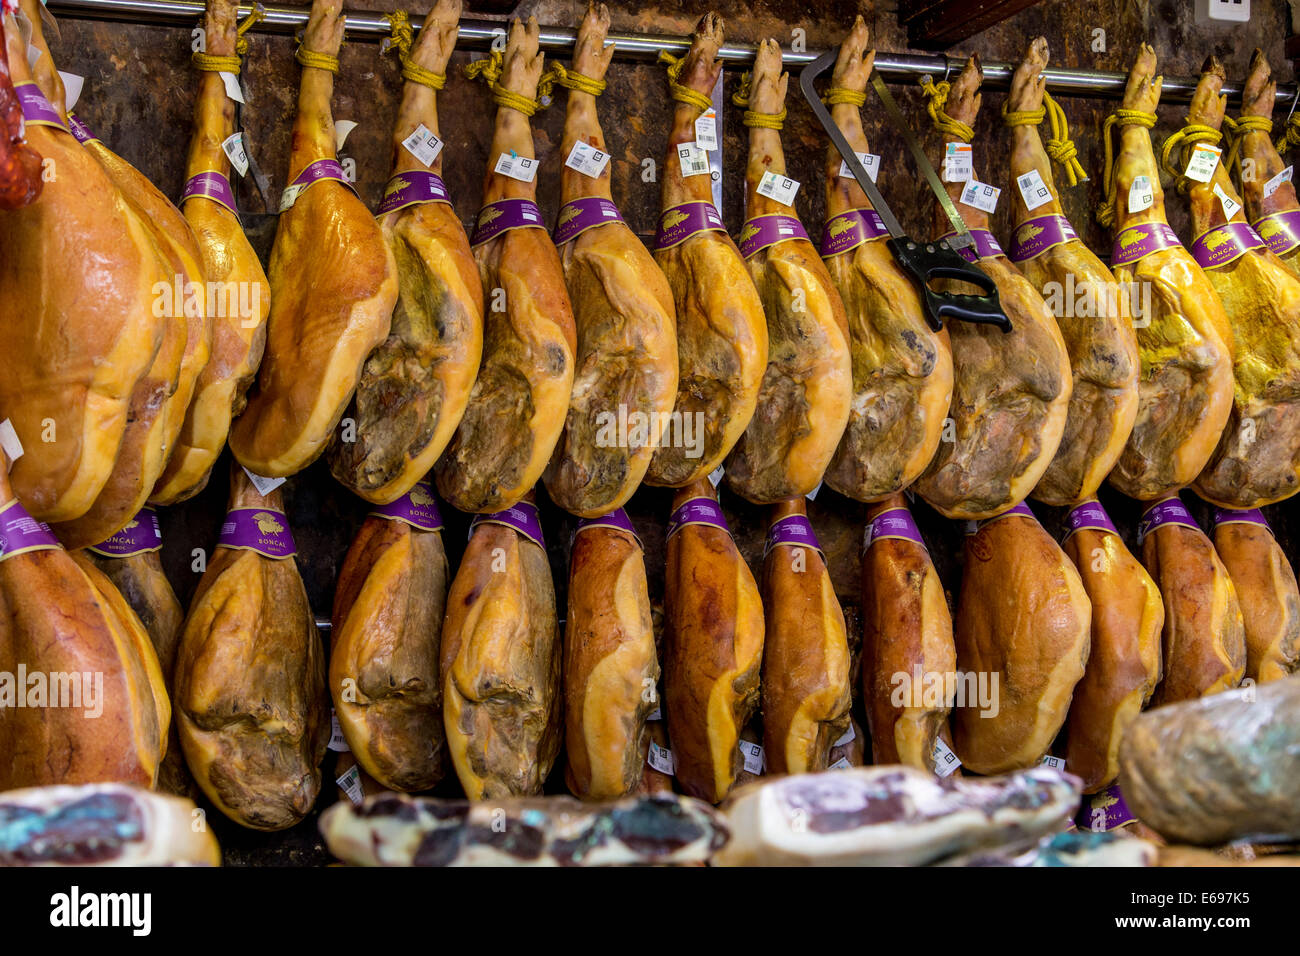 Spanish Serrano ham on the market, Valencia, Province of Valencia, Spain Stock Photo